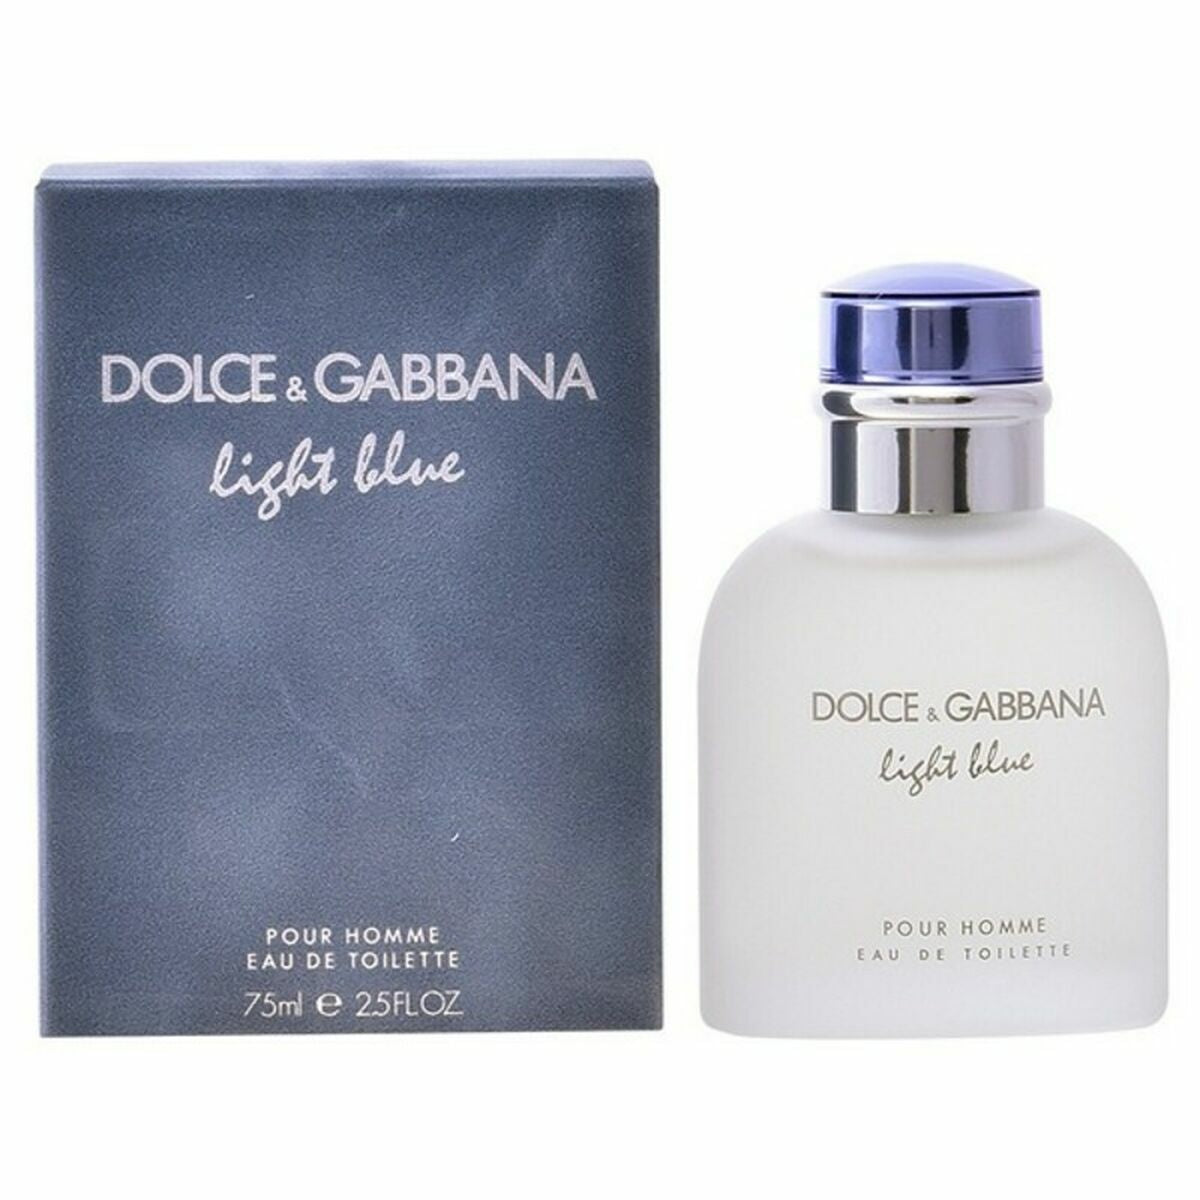 Herren Parfüm Dolce & Gabbana edt hellblau pour homme 125 ml